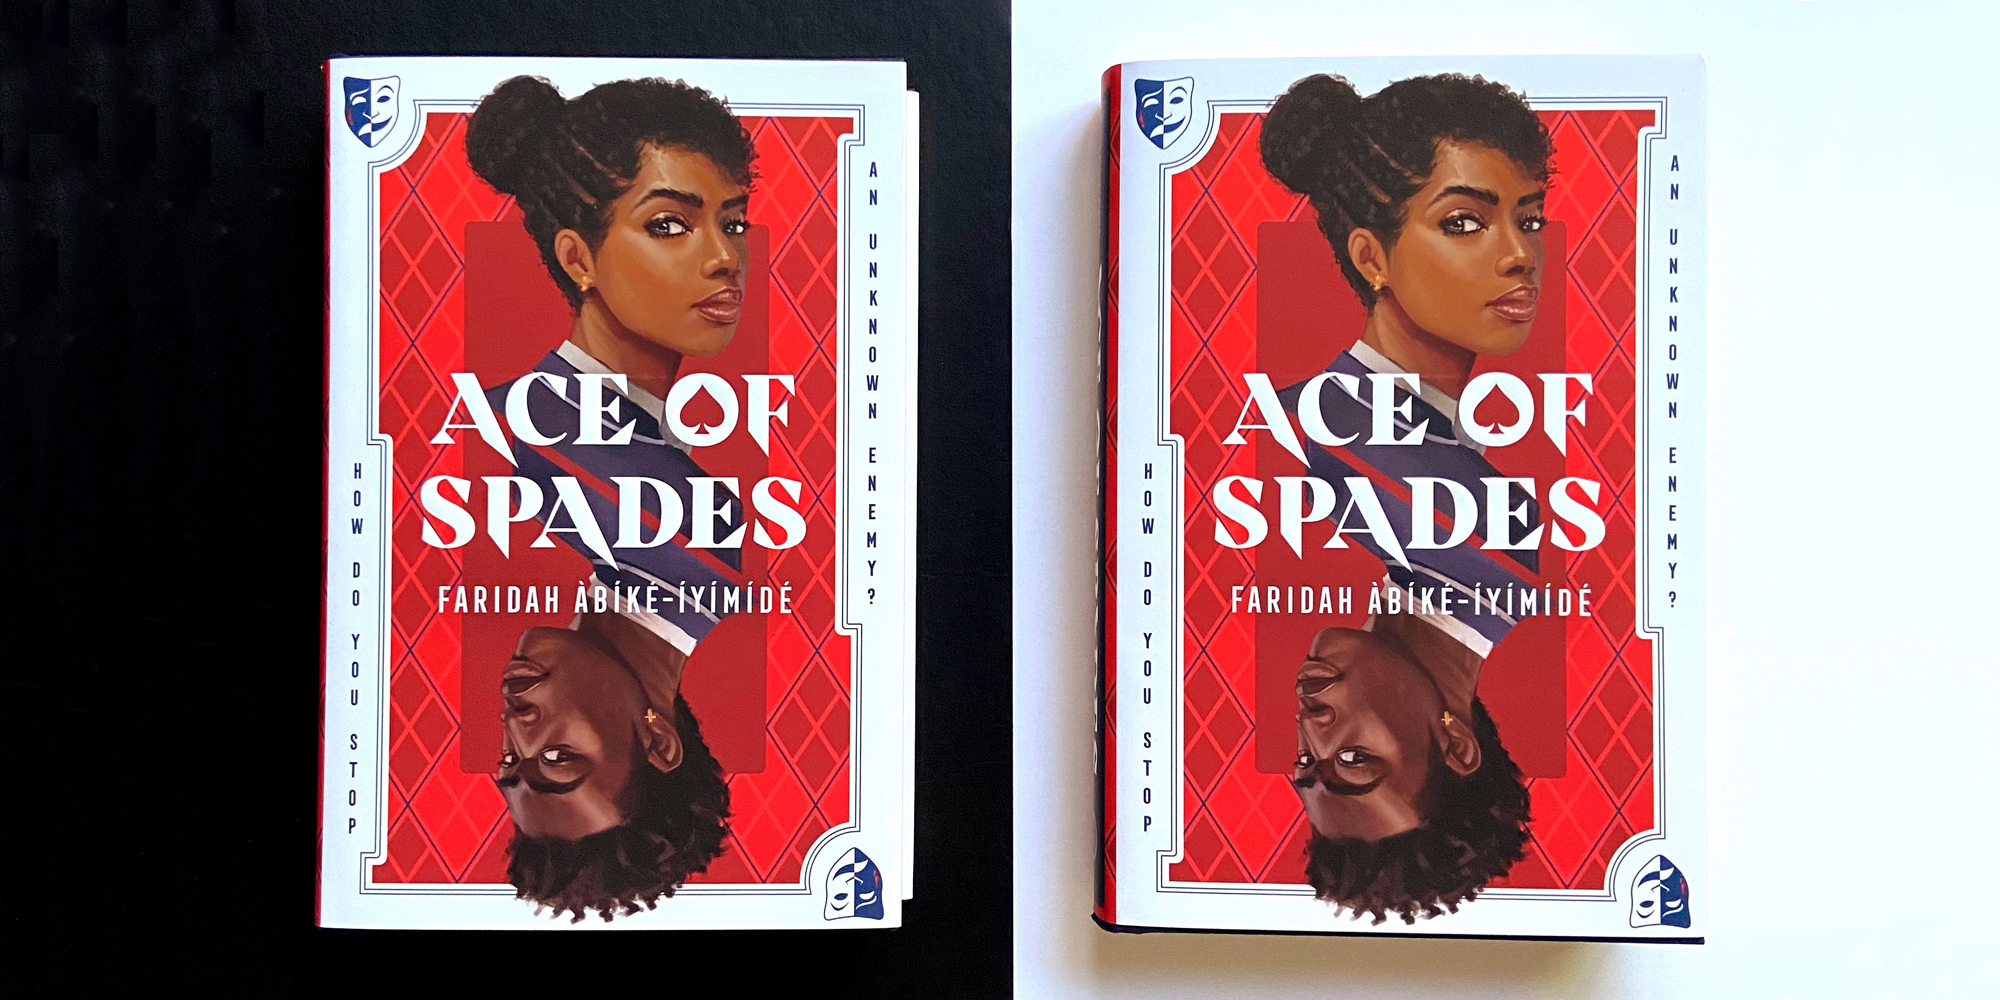 An Interview with Faridah Àbíké-Íyímídé, Author of Ace of Spades